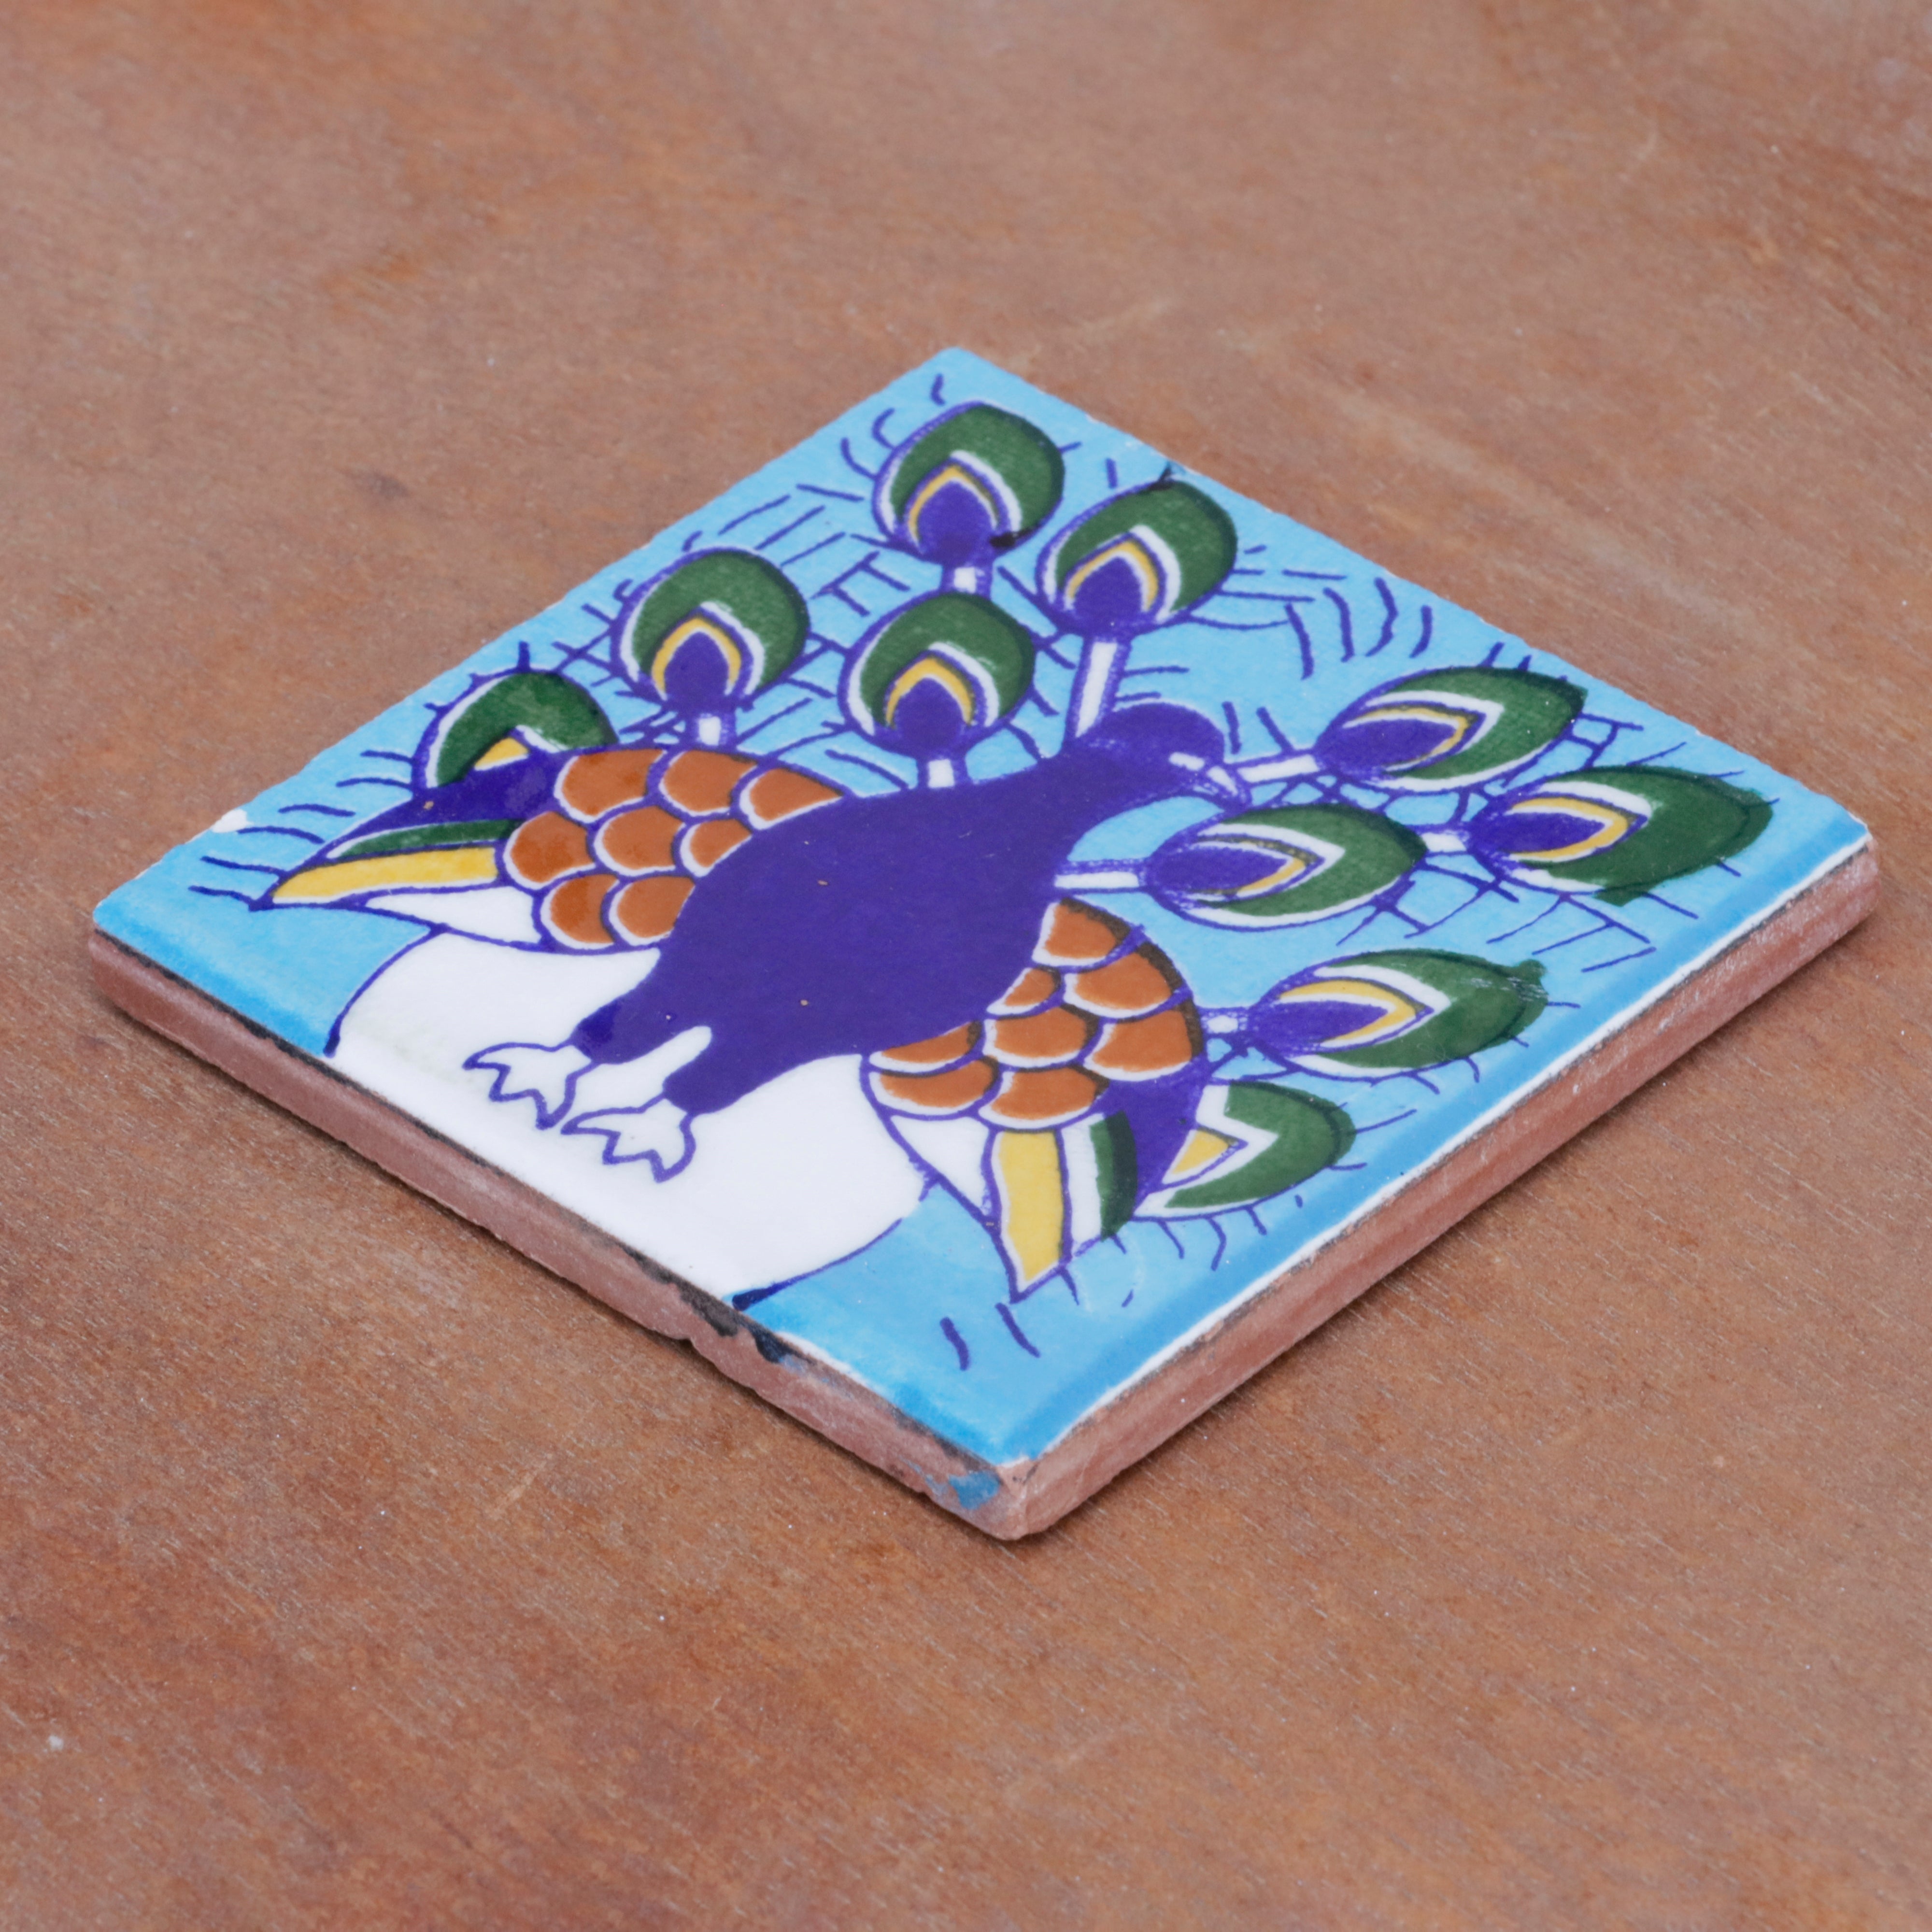 Classic Bold Blue Peacock Designed Ceramic Square Tile Ceramic Tile